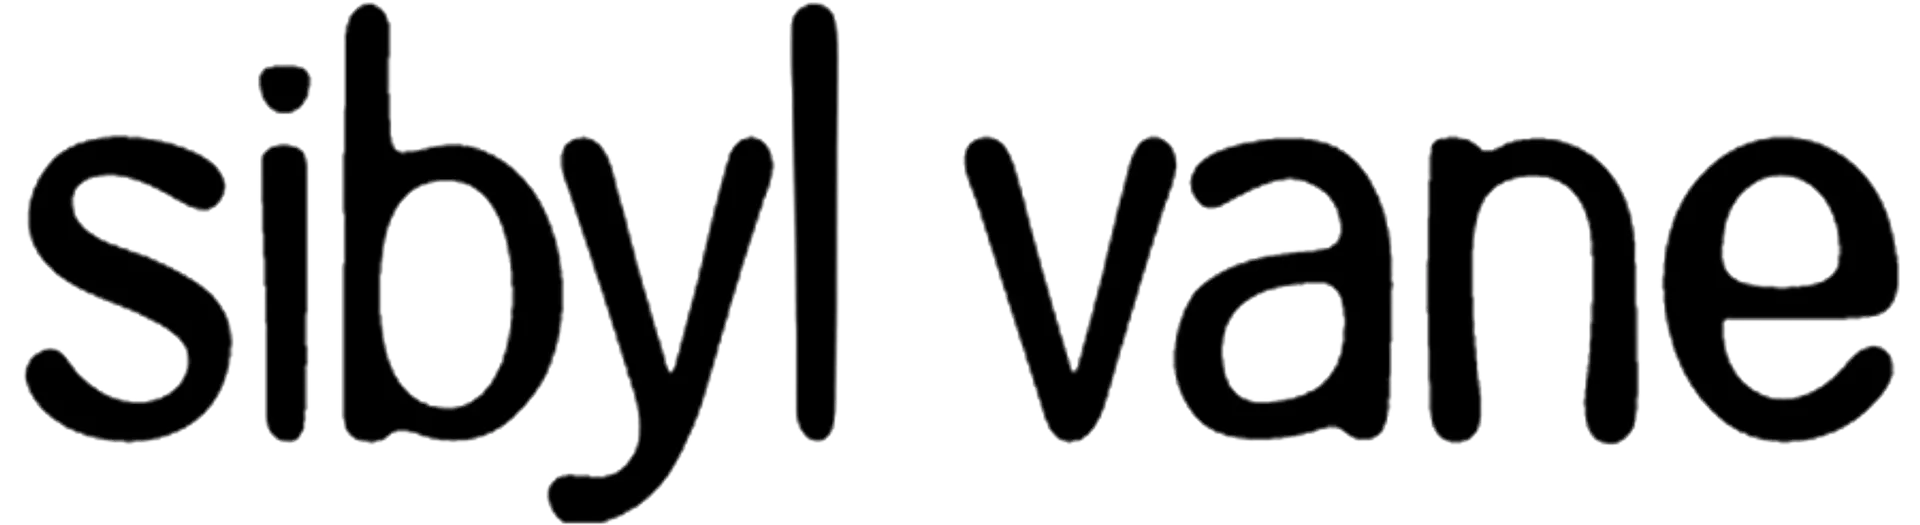 SIBYL VANE logo de catálogo